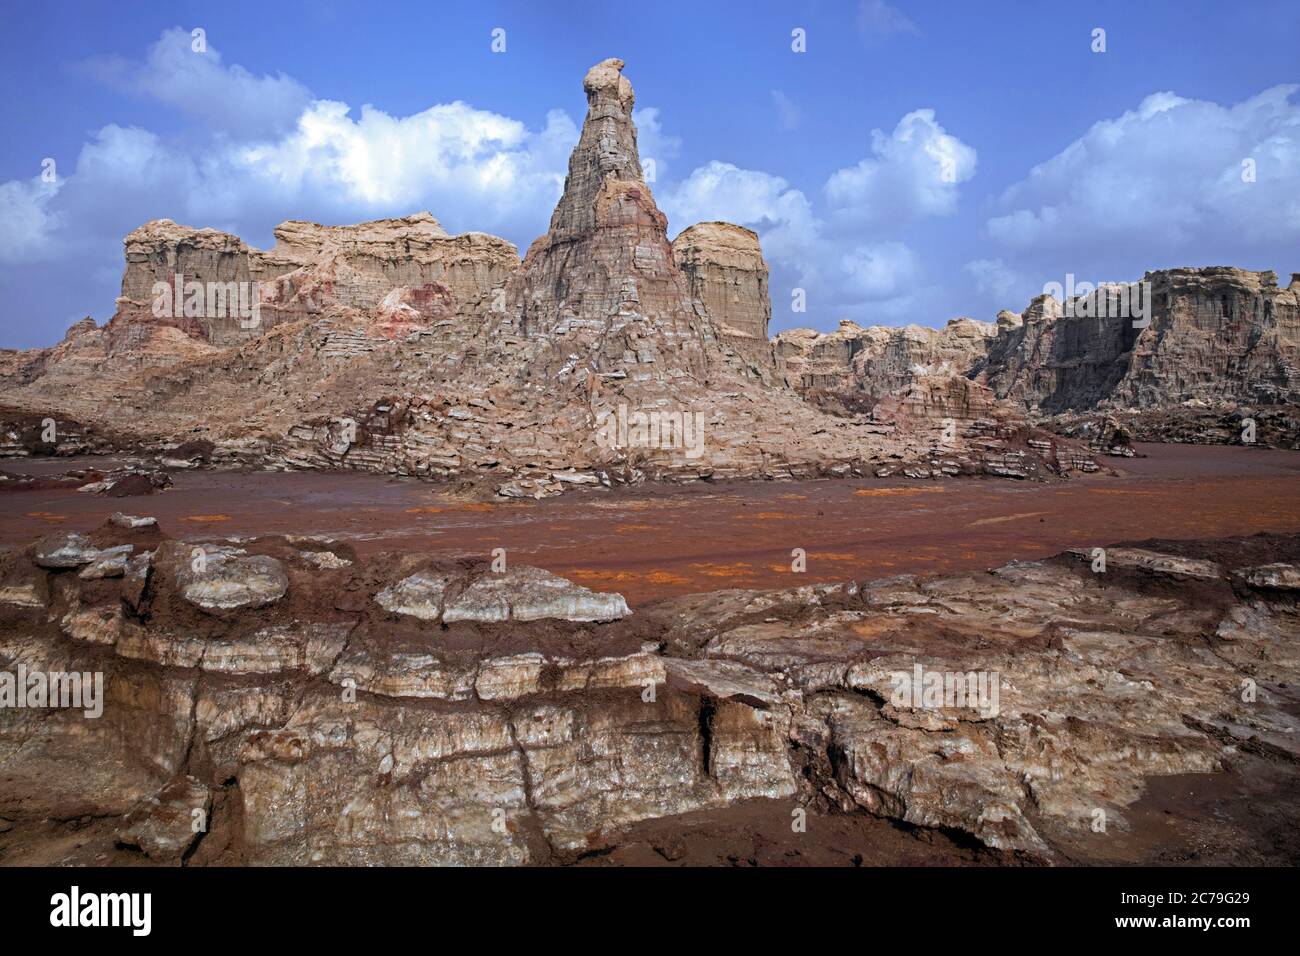 Tours érodées et pinnacles composés de sel, potassium et magnésium dans le désert de Danakil, région d'Afar, Éthiopie, Afrique Banque D'Images